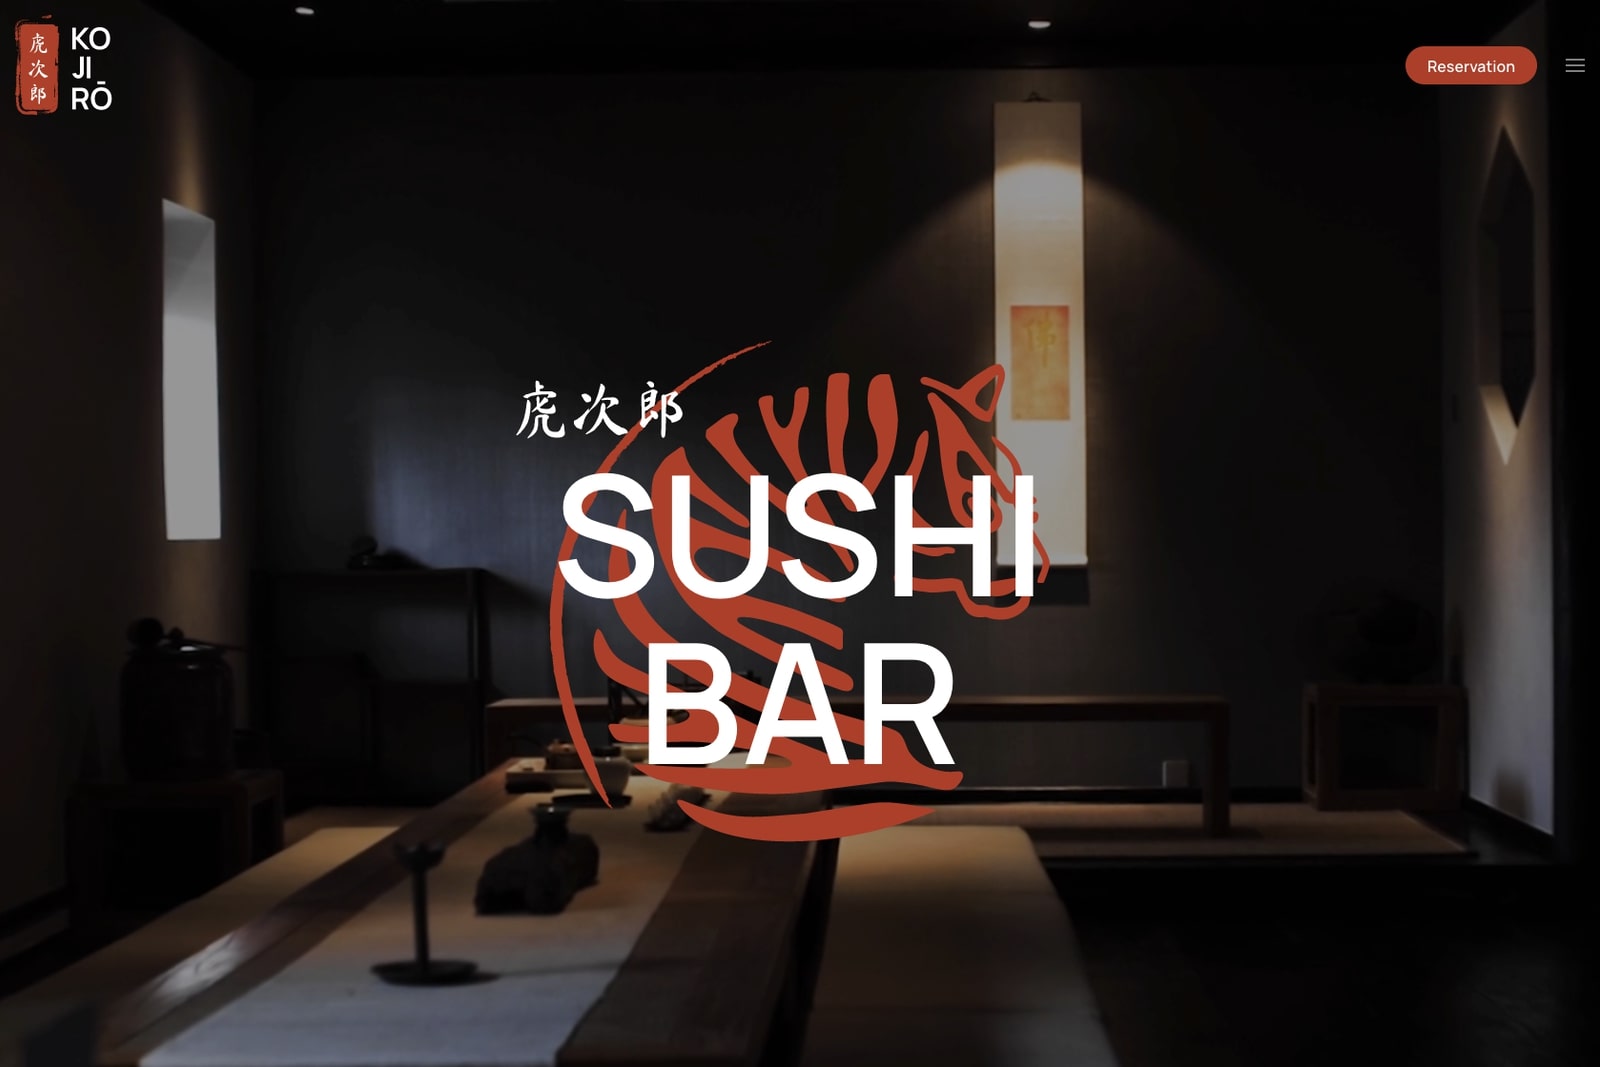 hawaii sushi restaurant website demo release